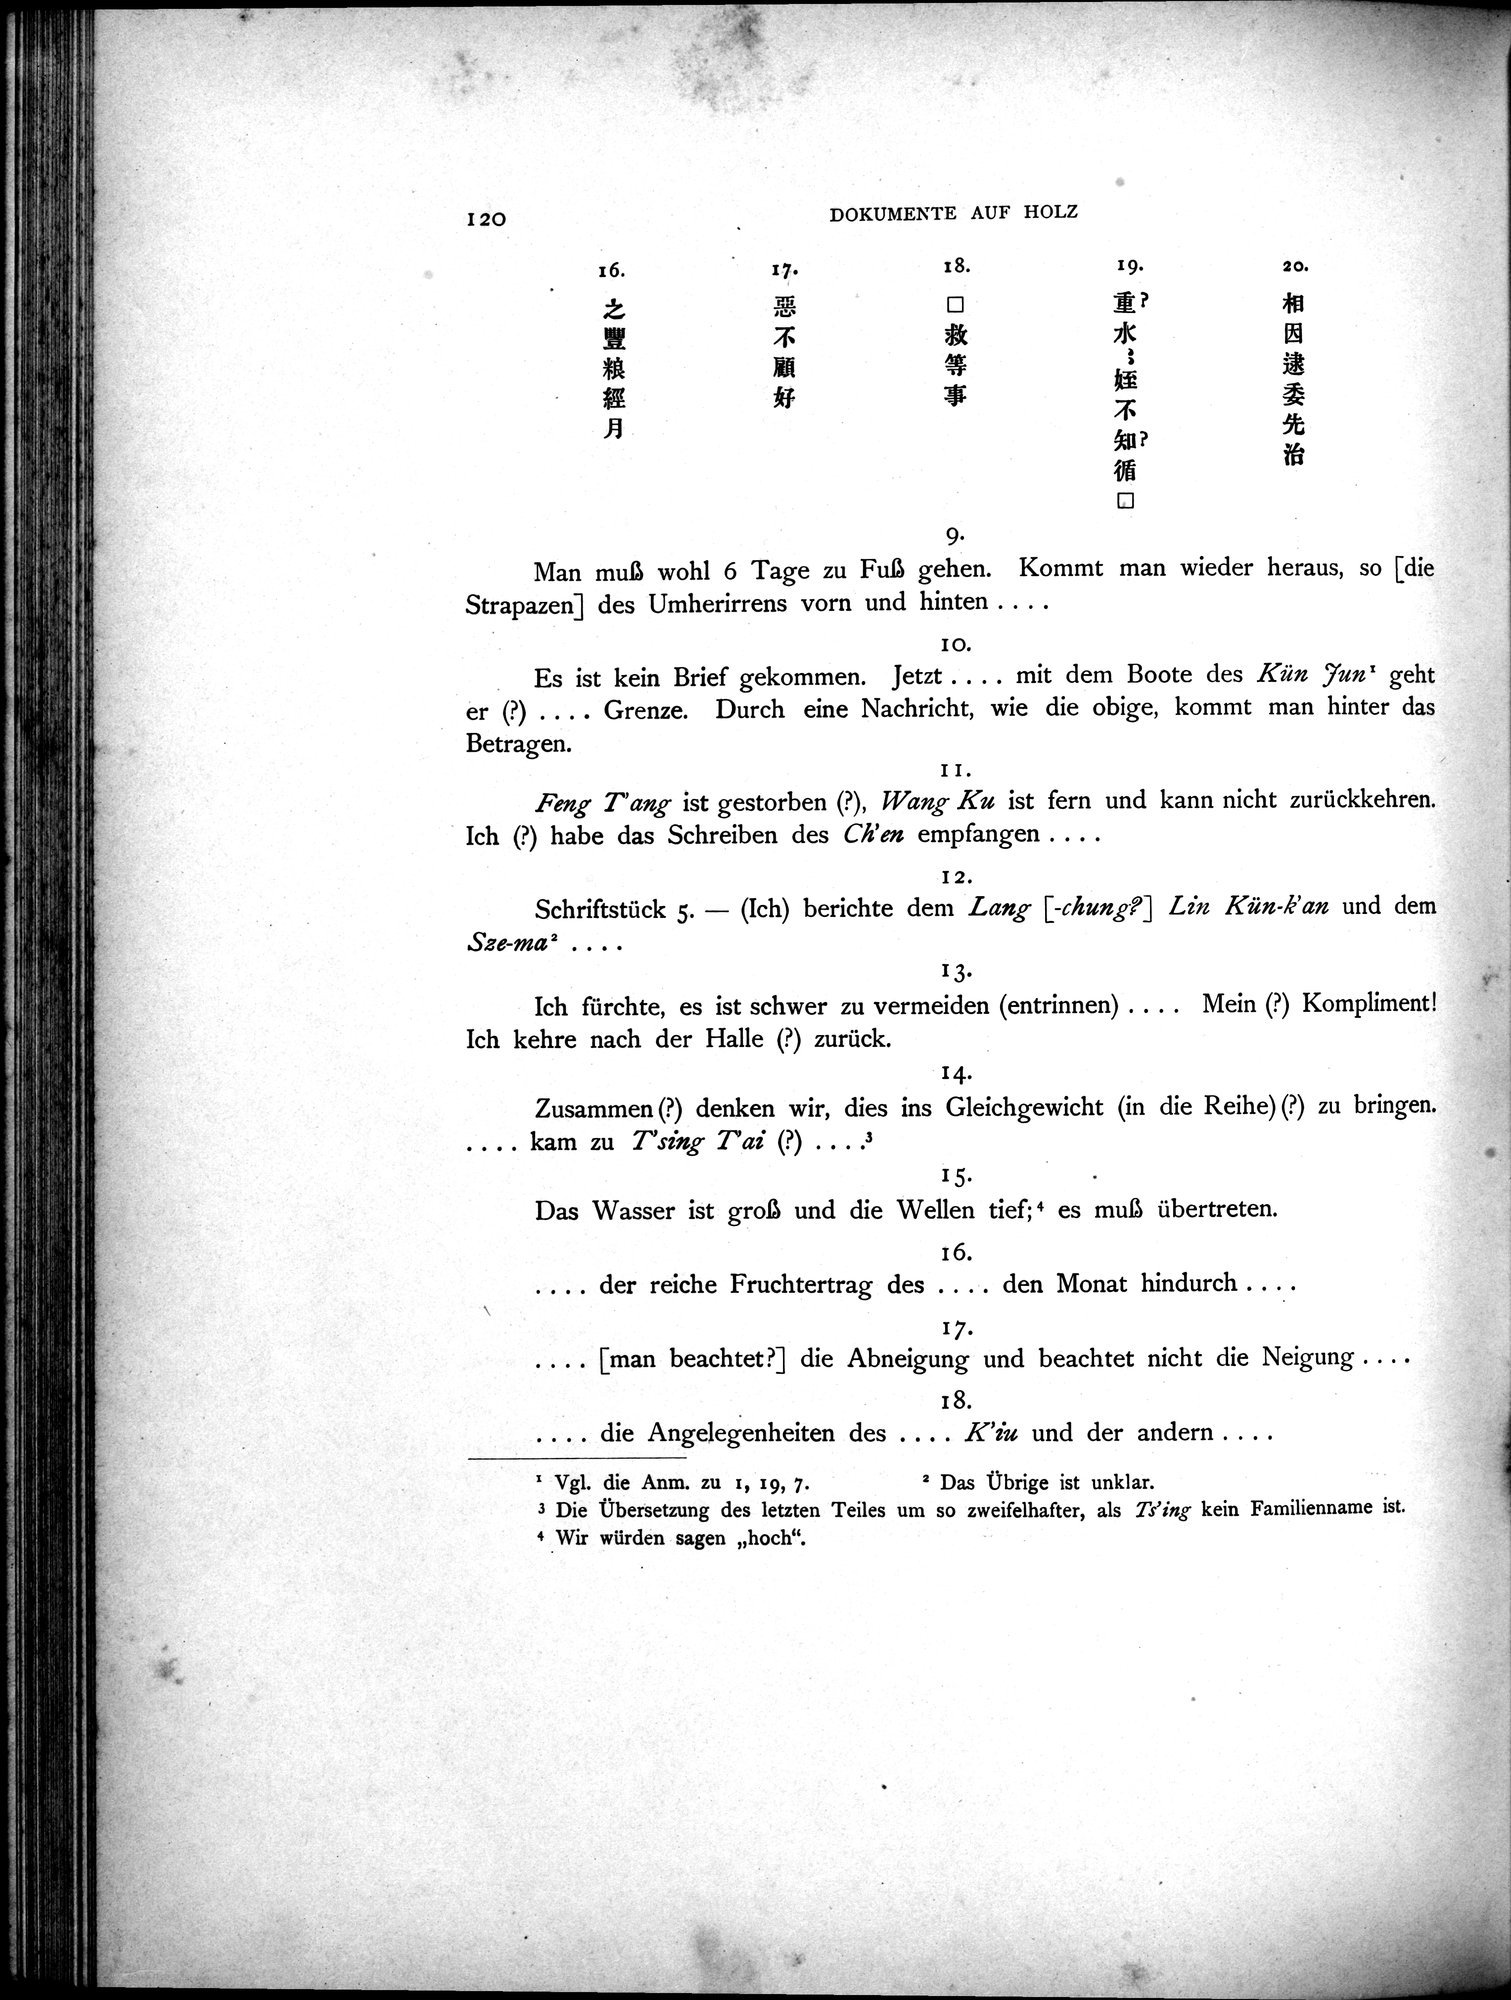 Die Chinesischen Handschriften- und sonstigen Kleinfunde Sven Hedins in Lou-lan : vol.1 / Page 144 (Grayscale High Resolution Image)